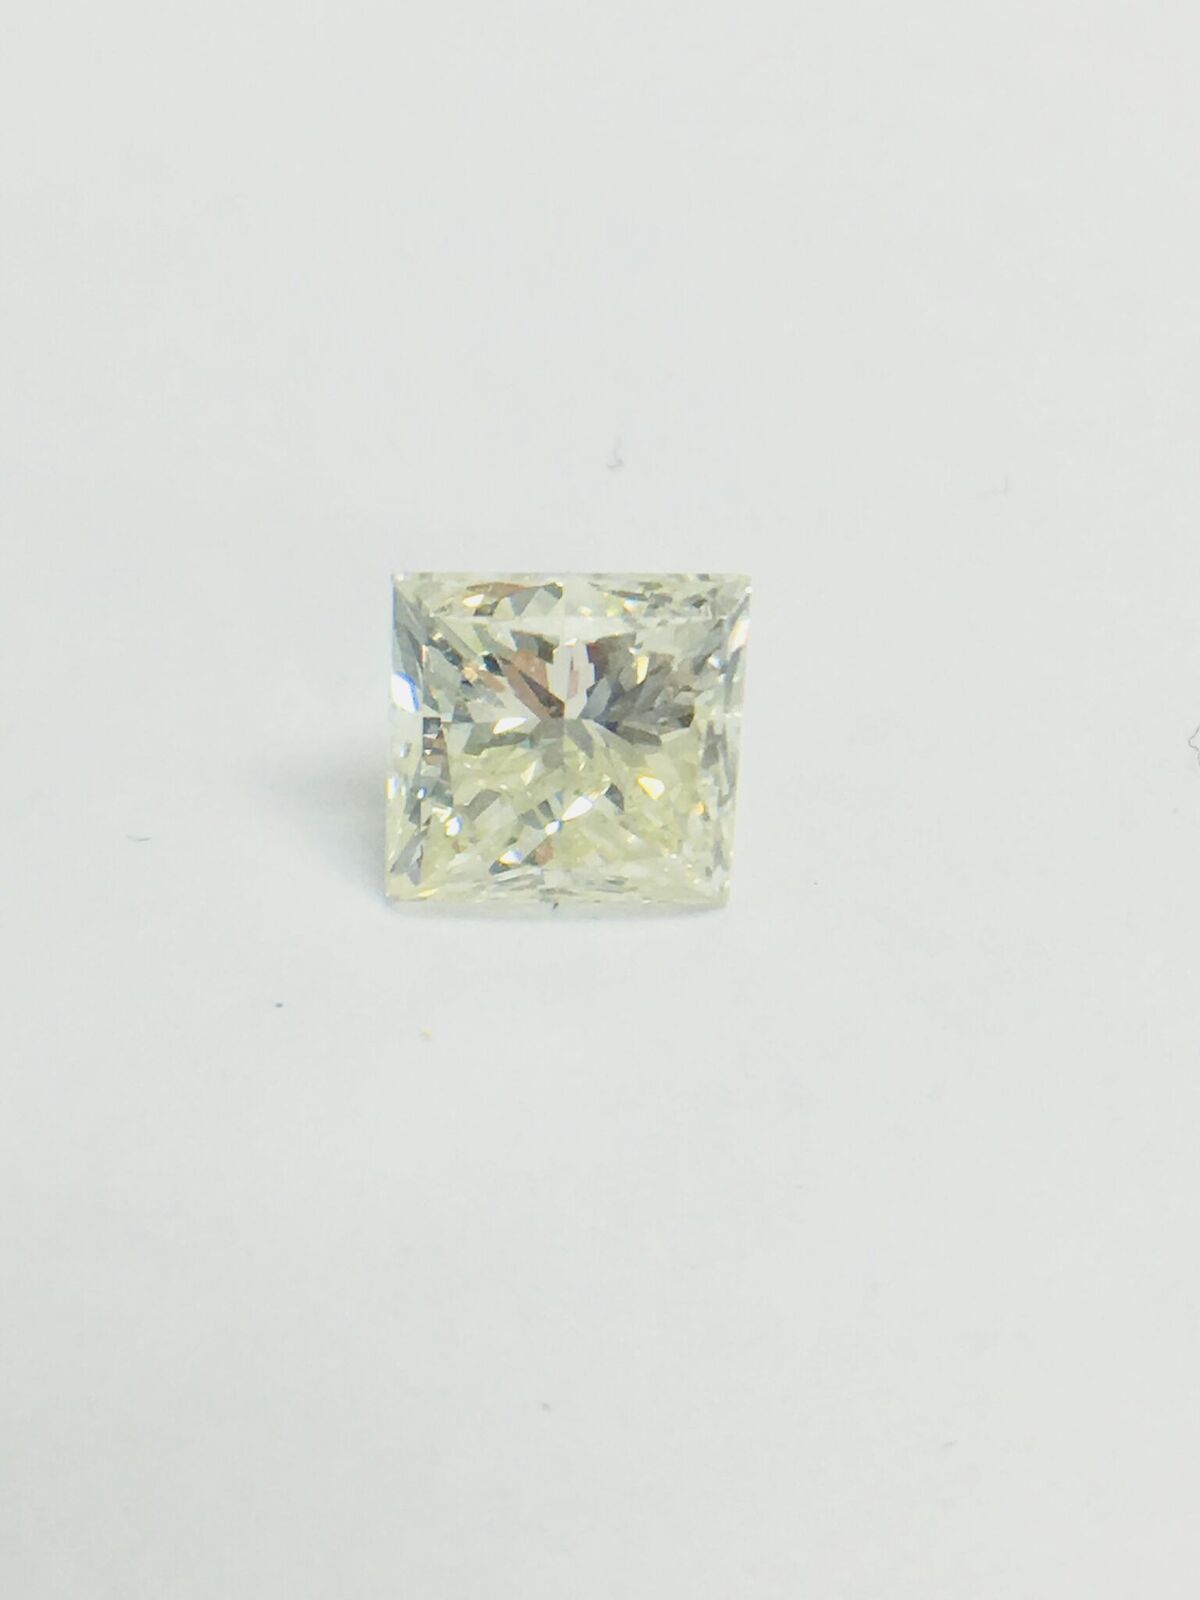 1ct Princess cut Diamond - Image 4 of 35